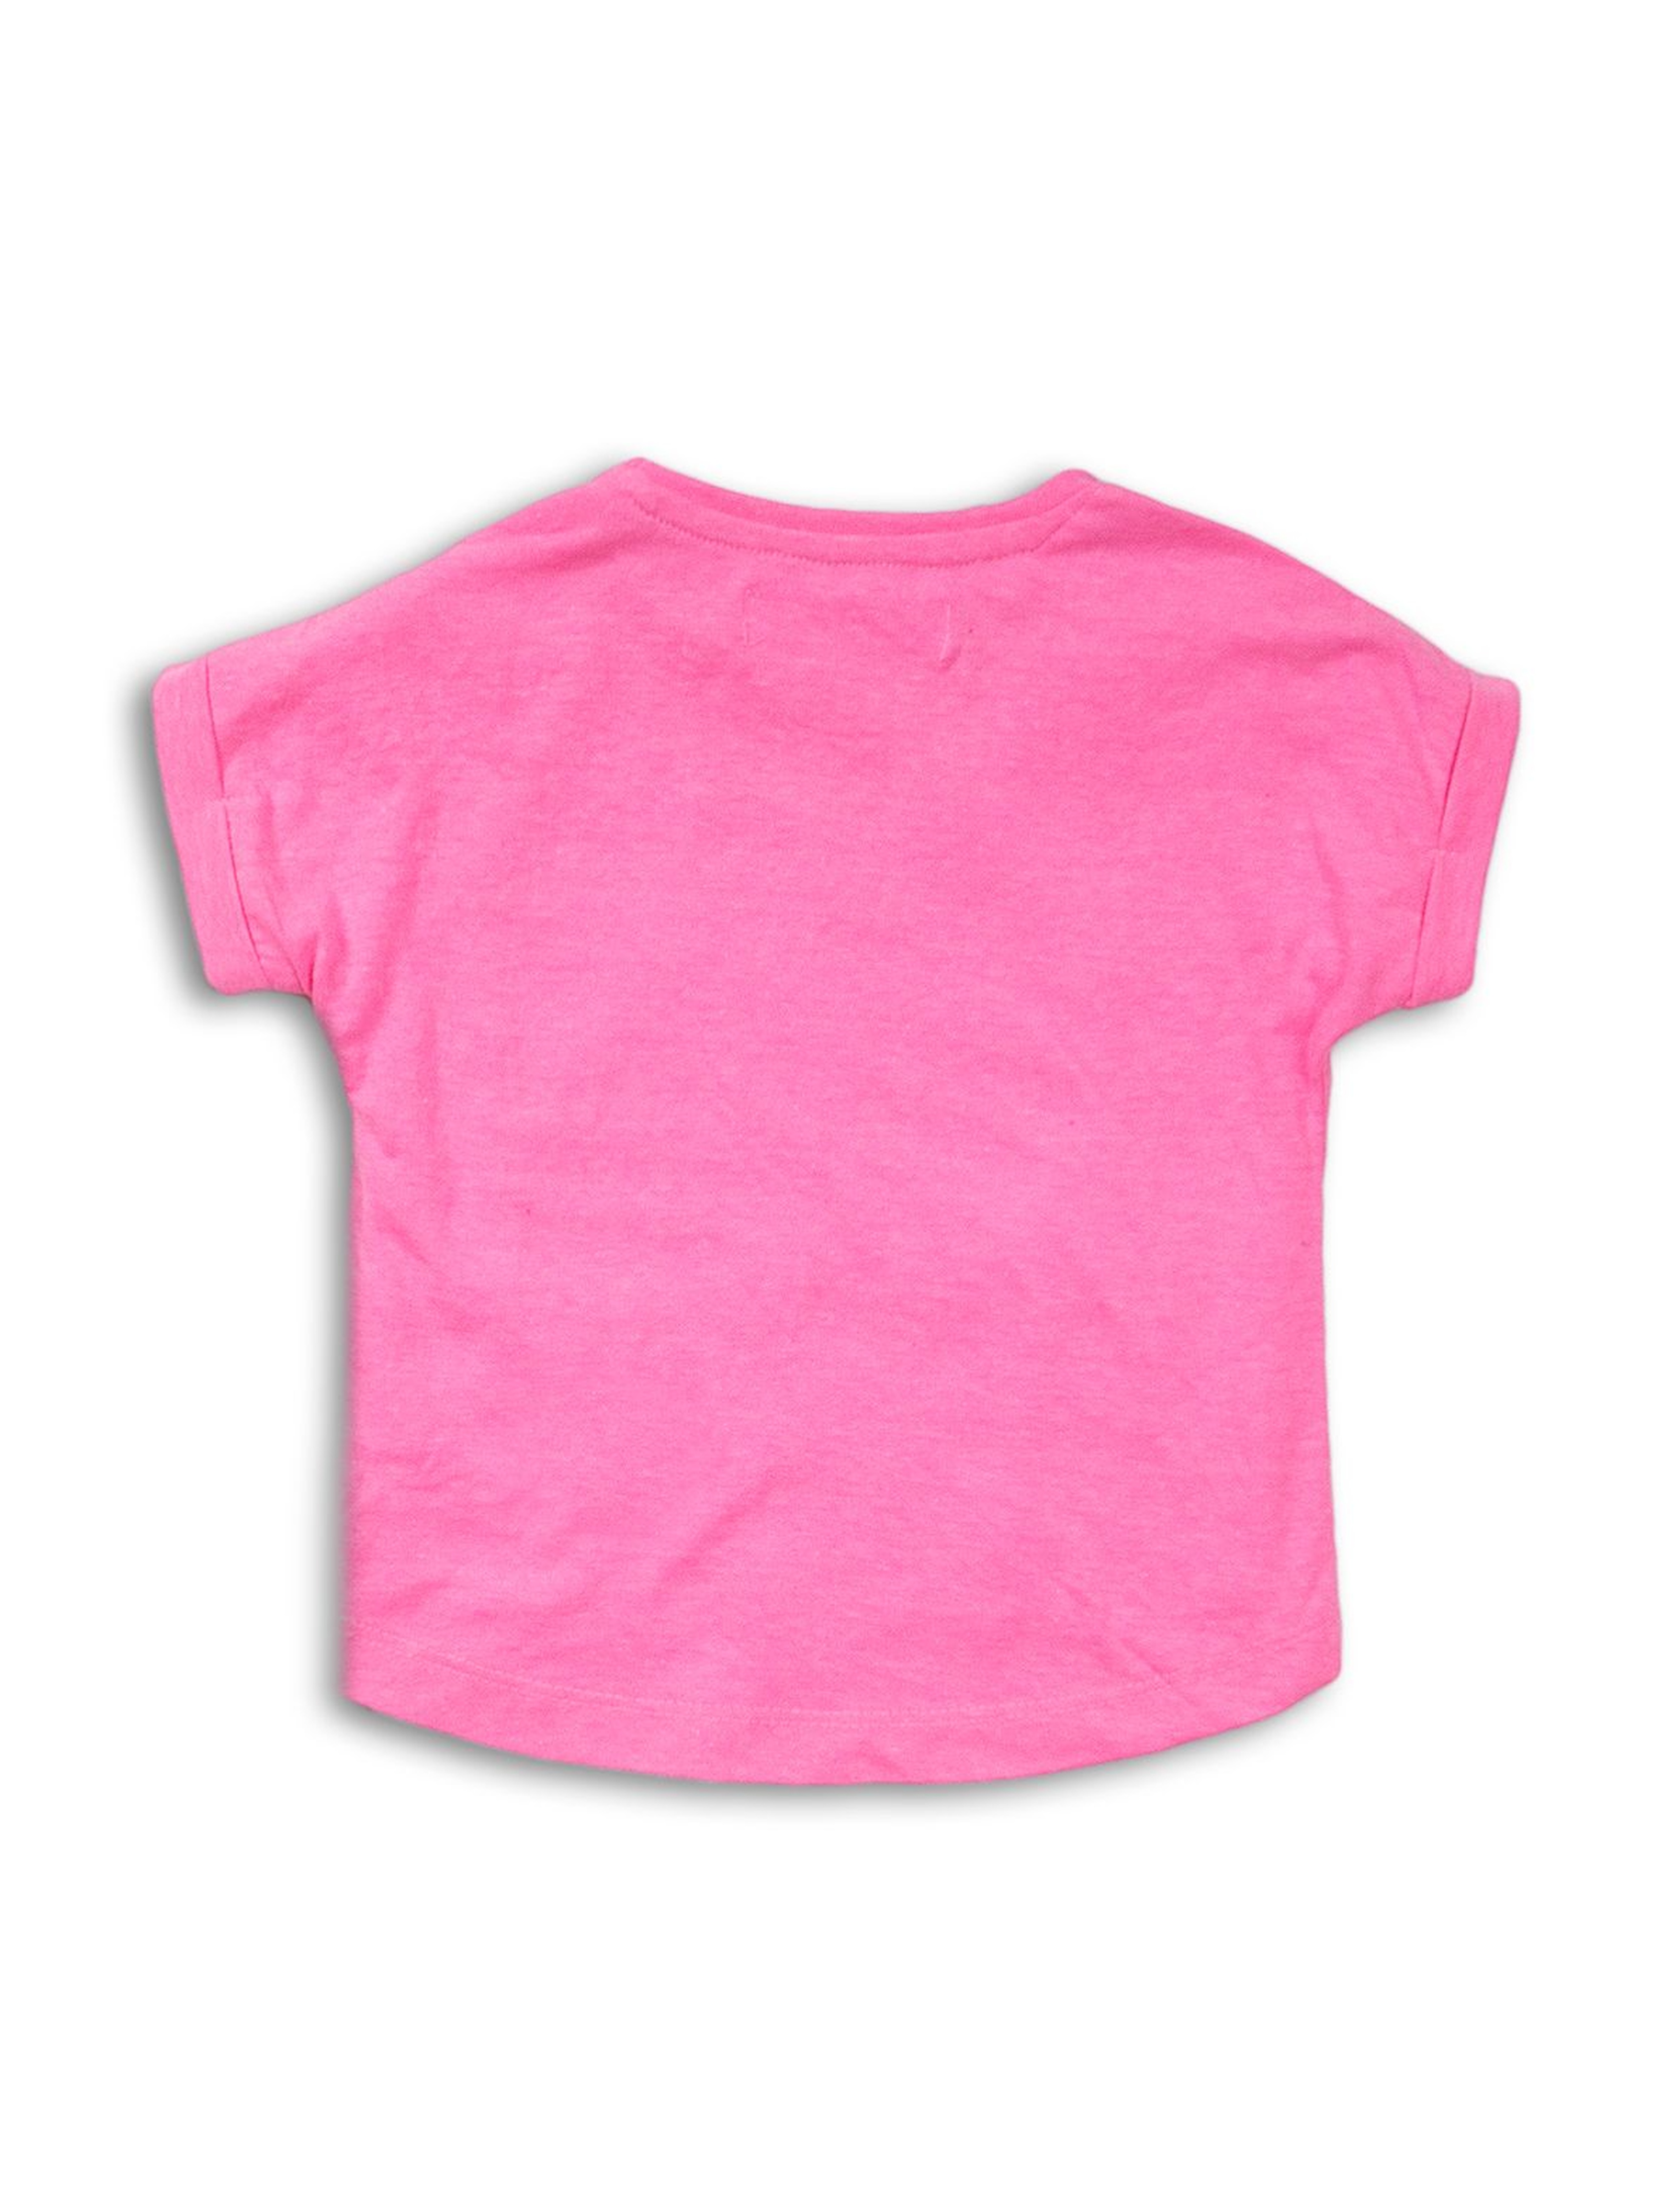 T-shirt dziewczęcy różowy z jednorożcem